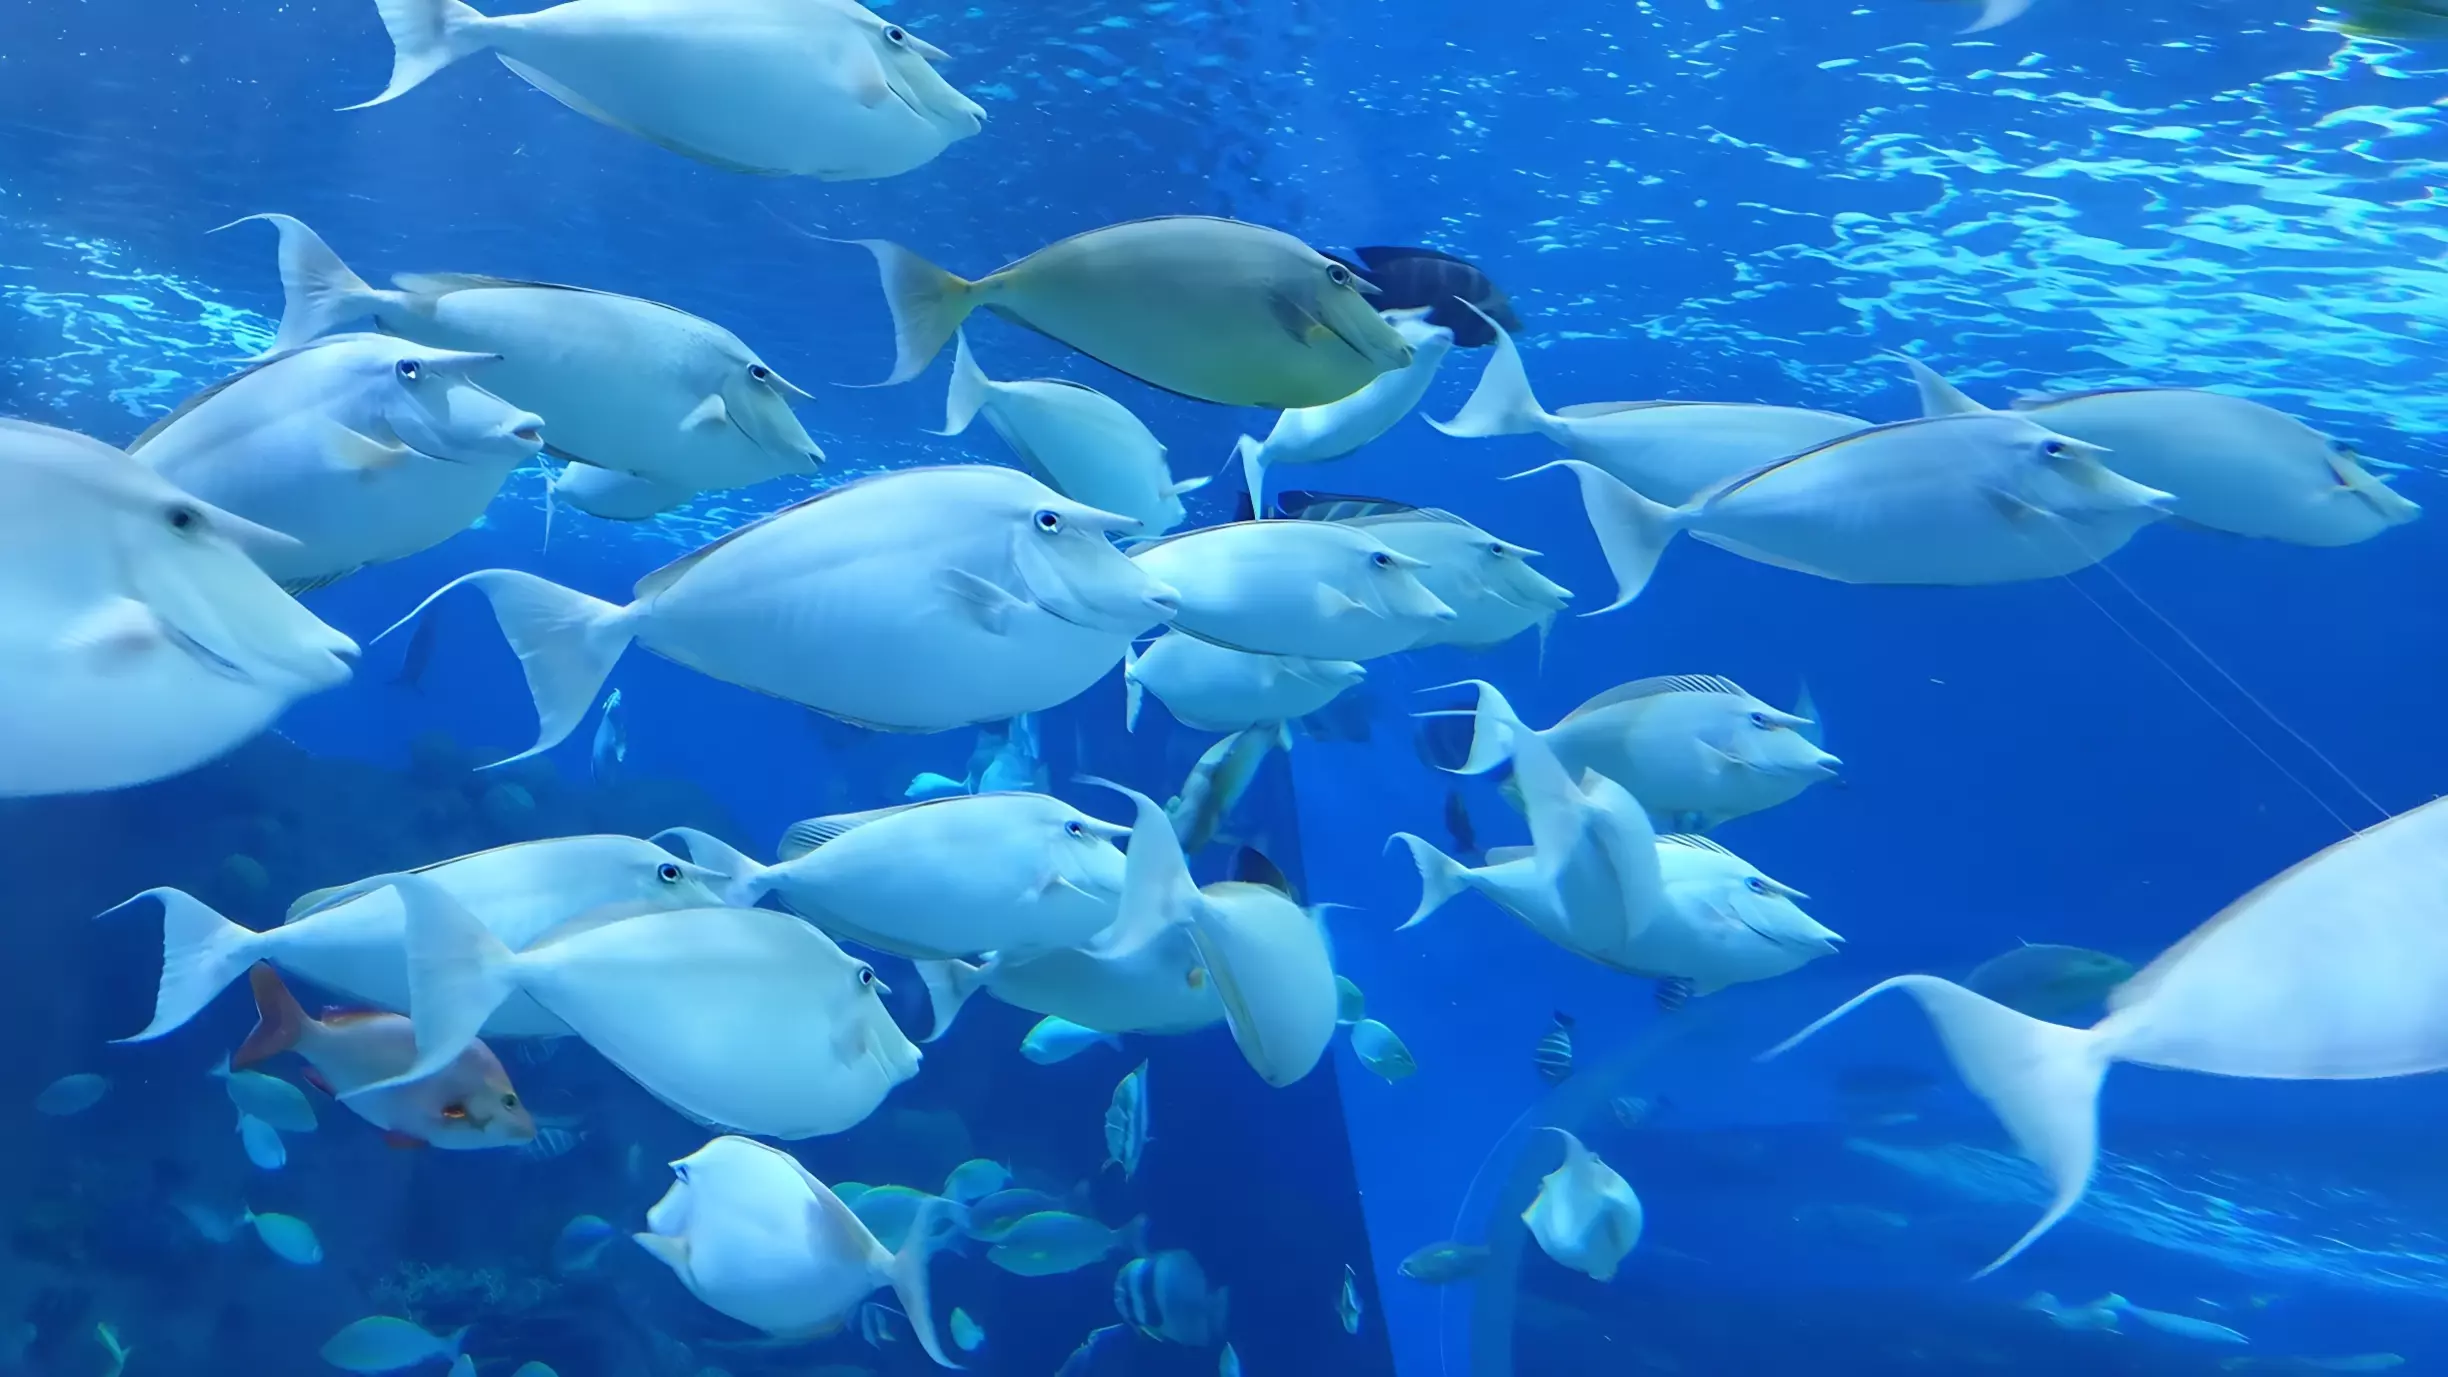 В ХМАО потратят почти 500 тыс руб на аквариумных рыбок для депутатов